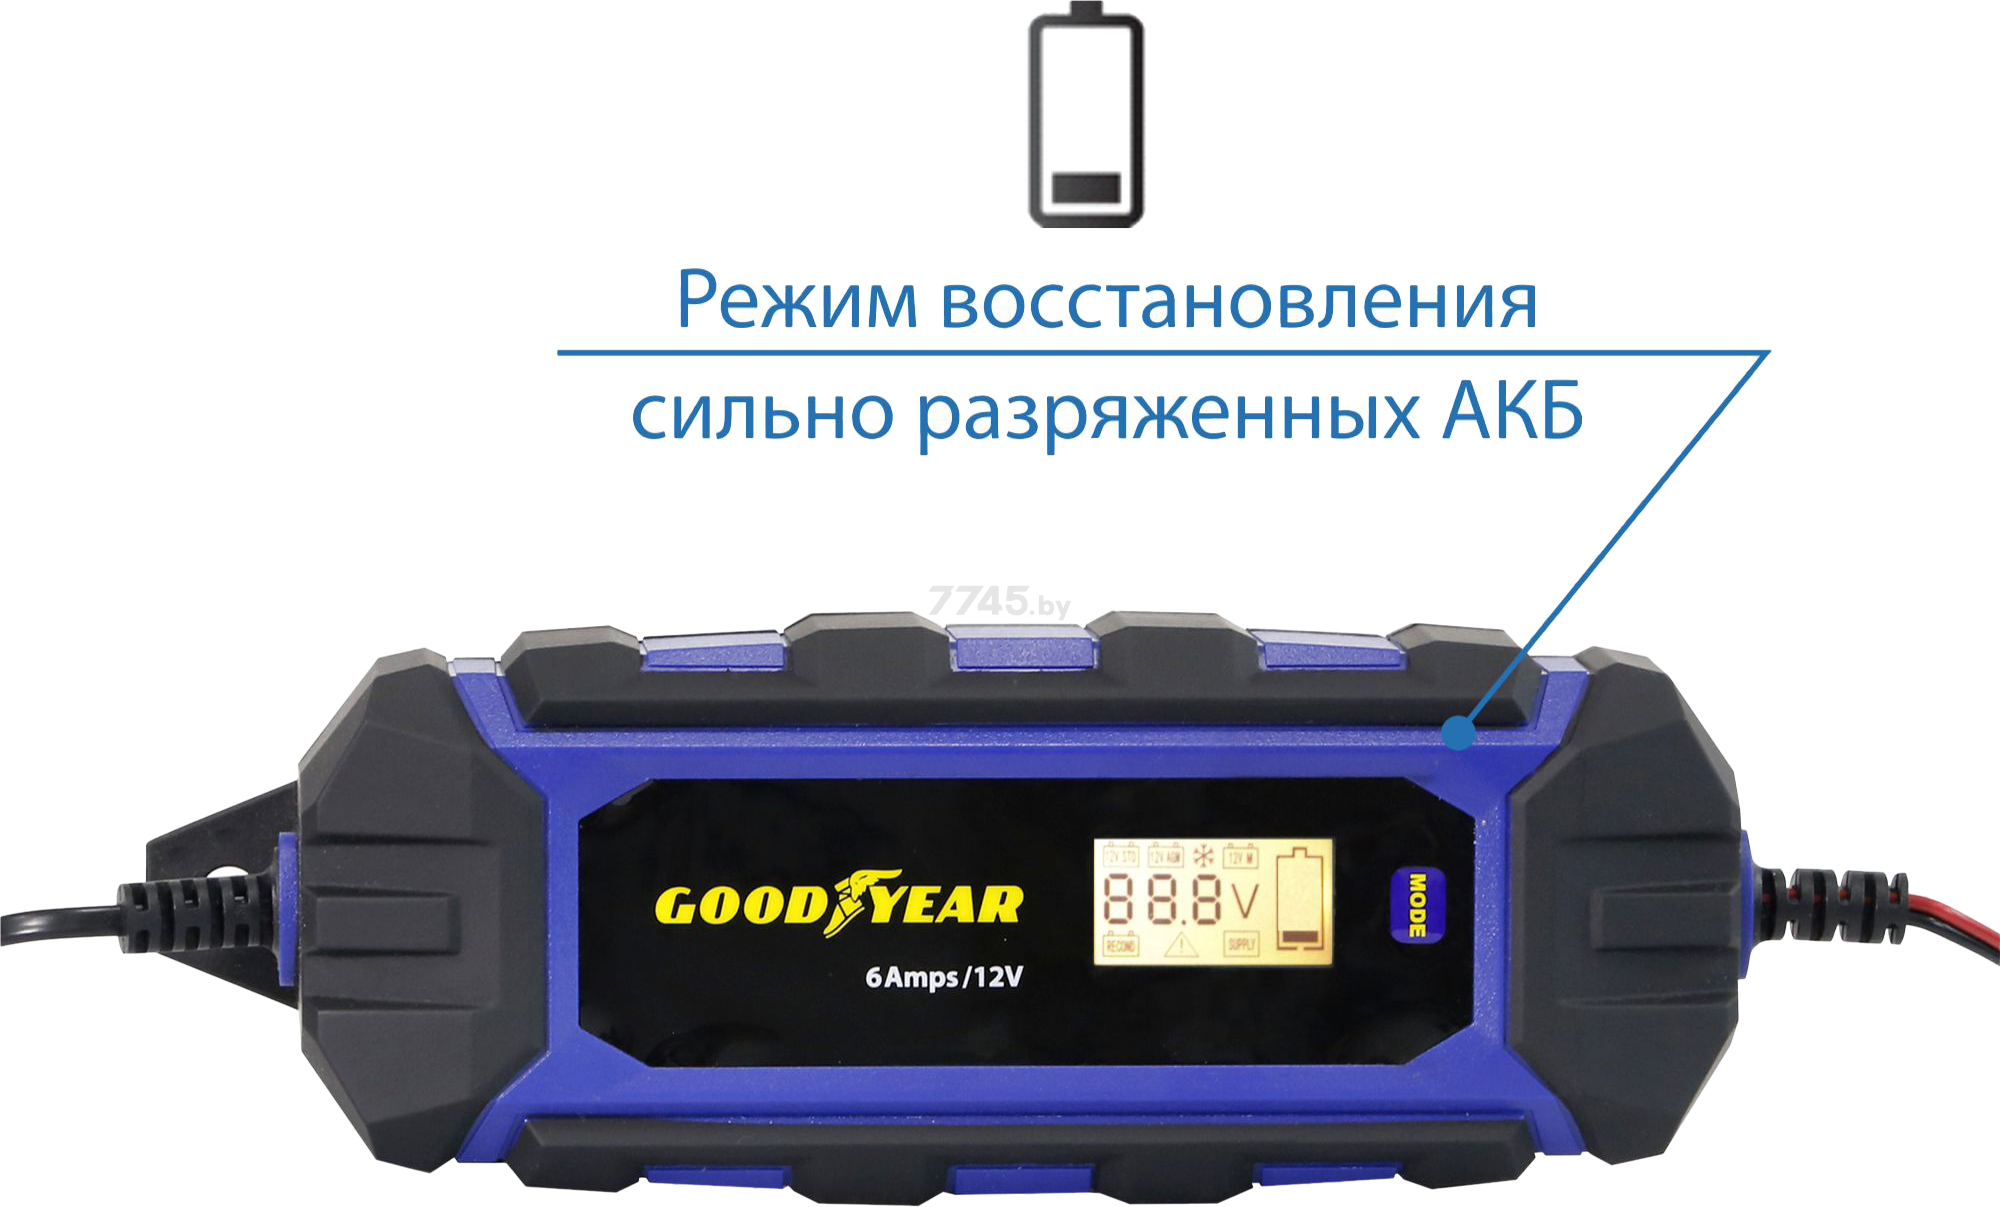 Goodyear ch. Goodyear gy003002 Ch-6a. Зарядное устройство Goodyear Ch-10a. Gy003002. Зарядное устройство для автомобильного аккумулятора Goodyear.